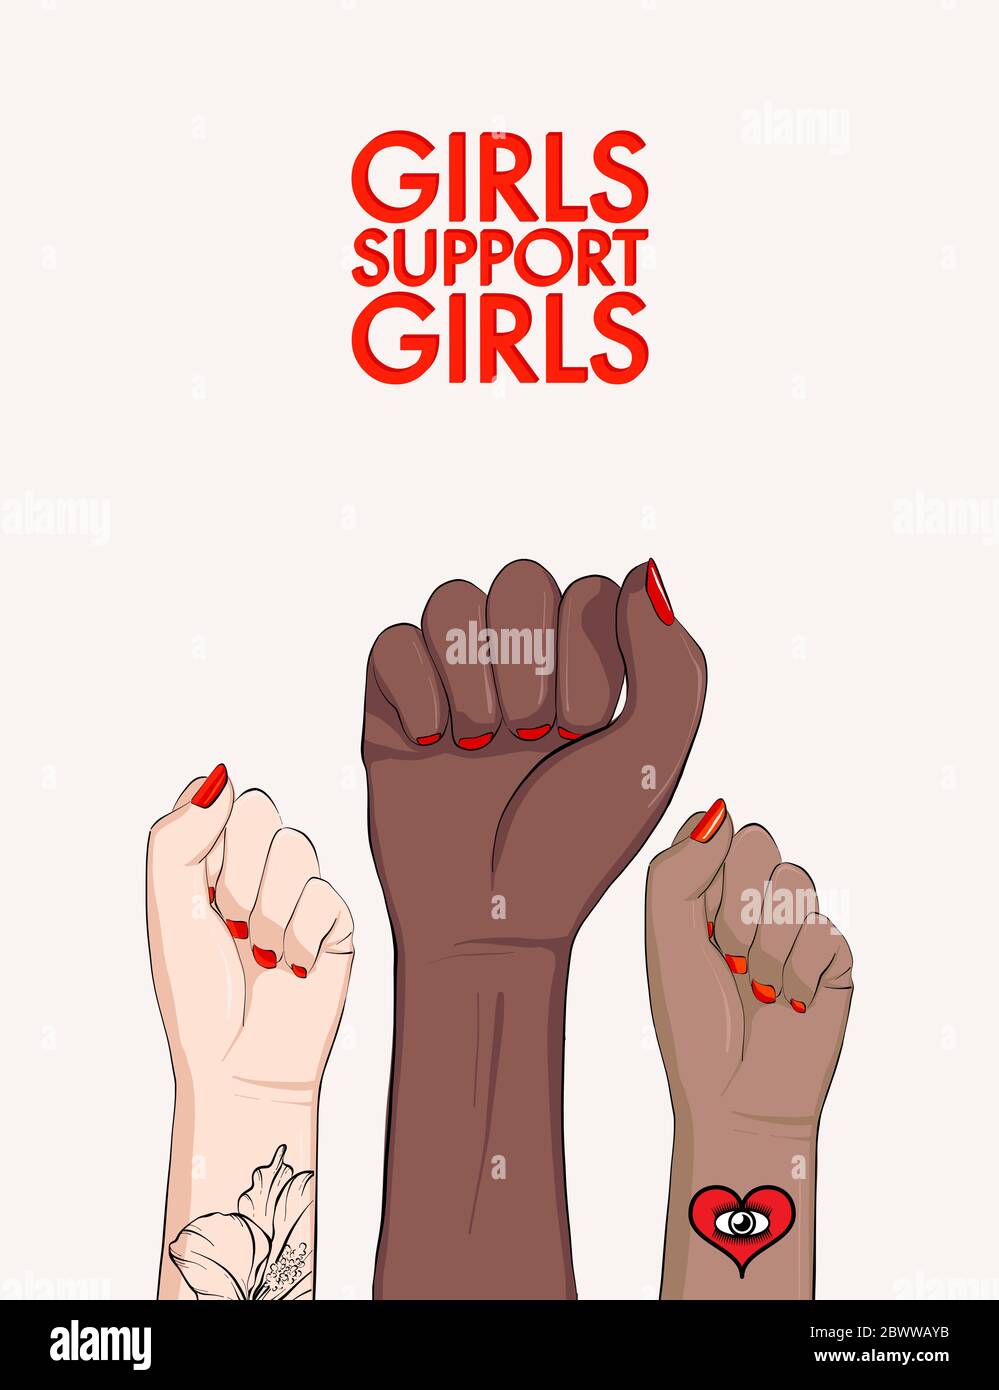 Les filles soutiennent les filles, femme bras divergent affiche d'égalité. Affiche de puissance féministe. Anti-discrimination, arrêter la presse sociale active raciste. Fille Power bann Illustration de Vecteur